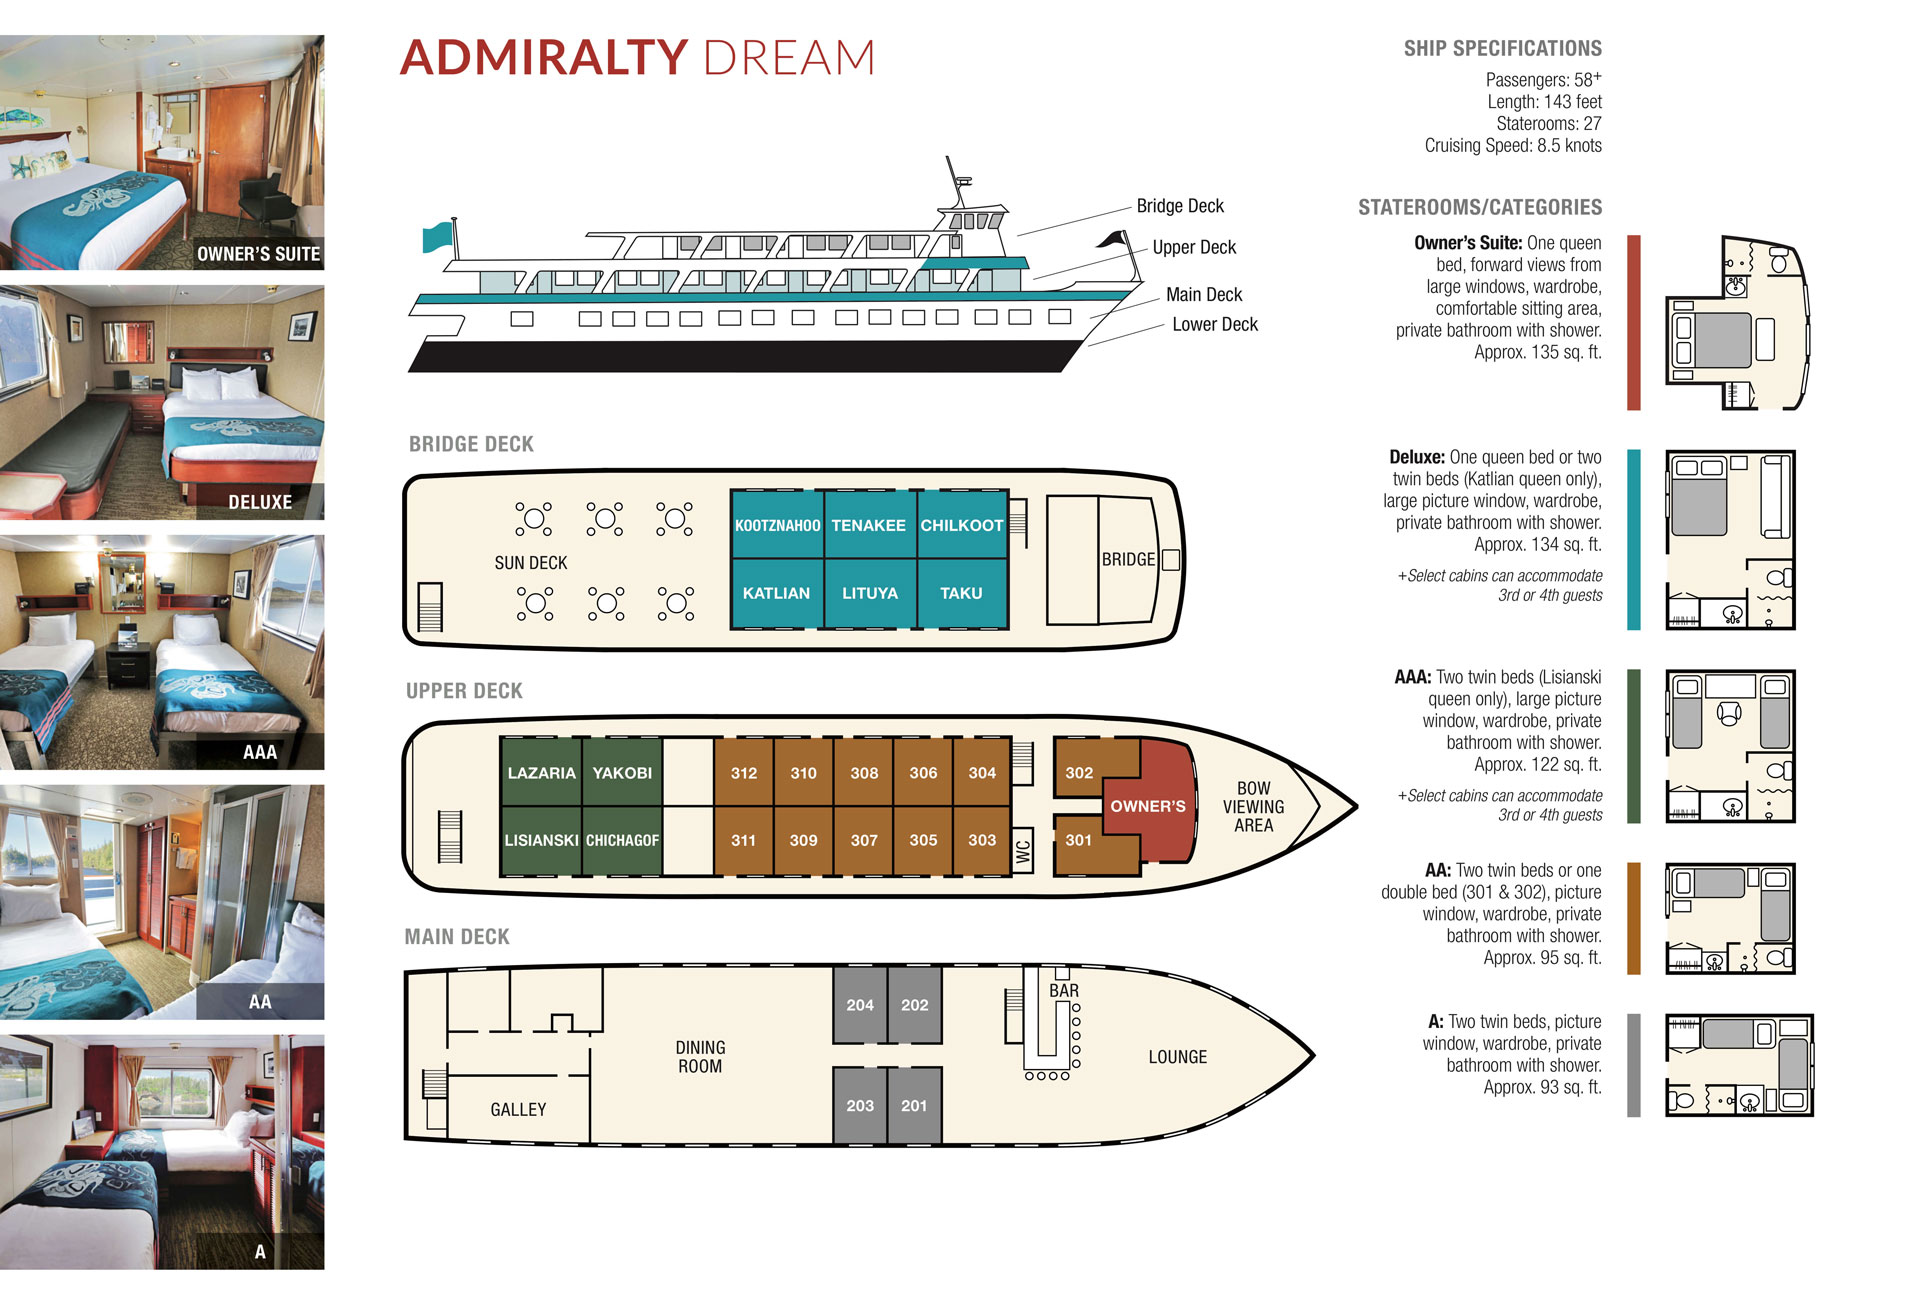 Deck plan of Admiralty Dream small Alaska ship with 3 passenger decks & 5 cabin categories.